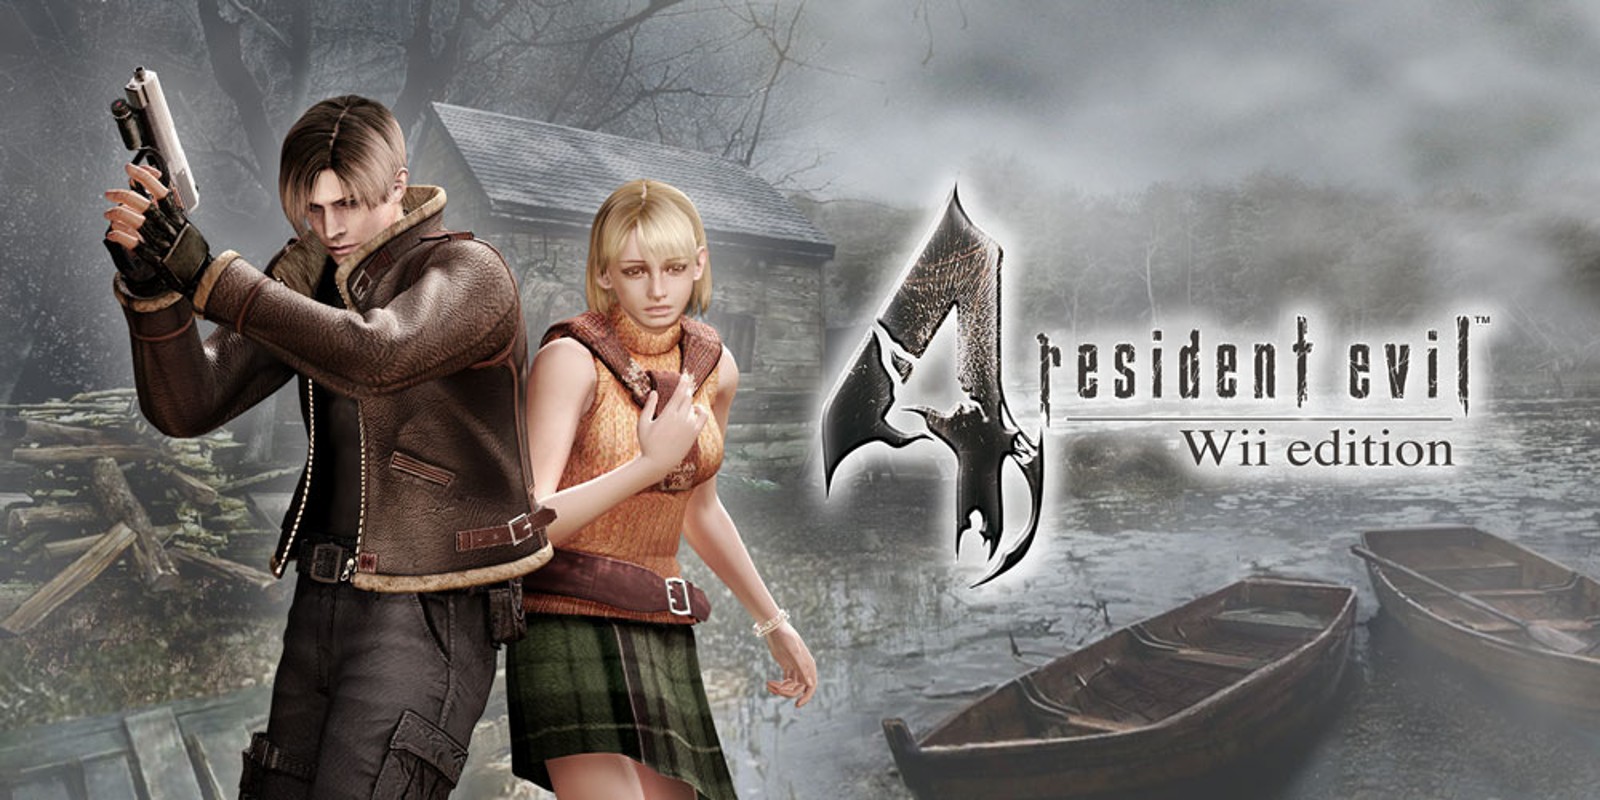 Прохождение игры Resident Evil 4 - Ultimate HD Edition # 18 (Русская версия игры) PC - Ver. HD Full.